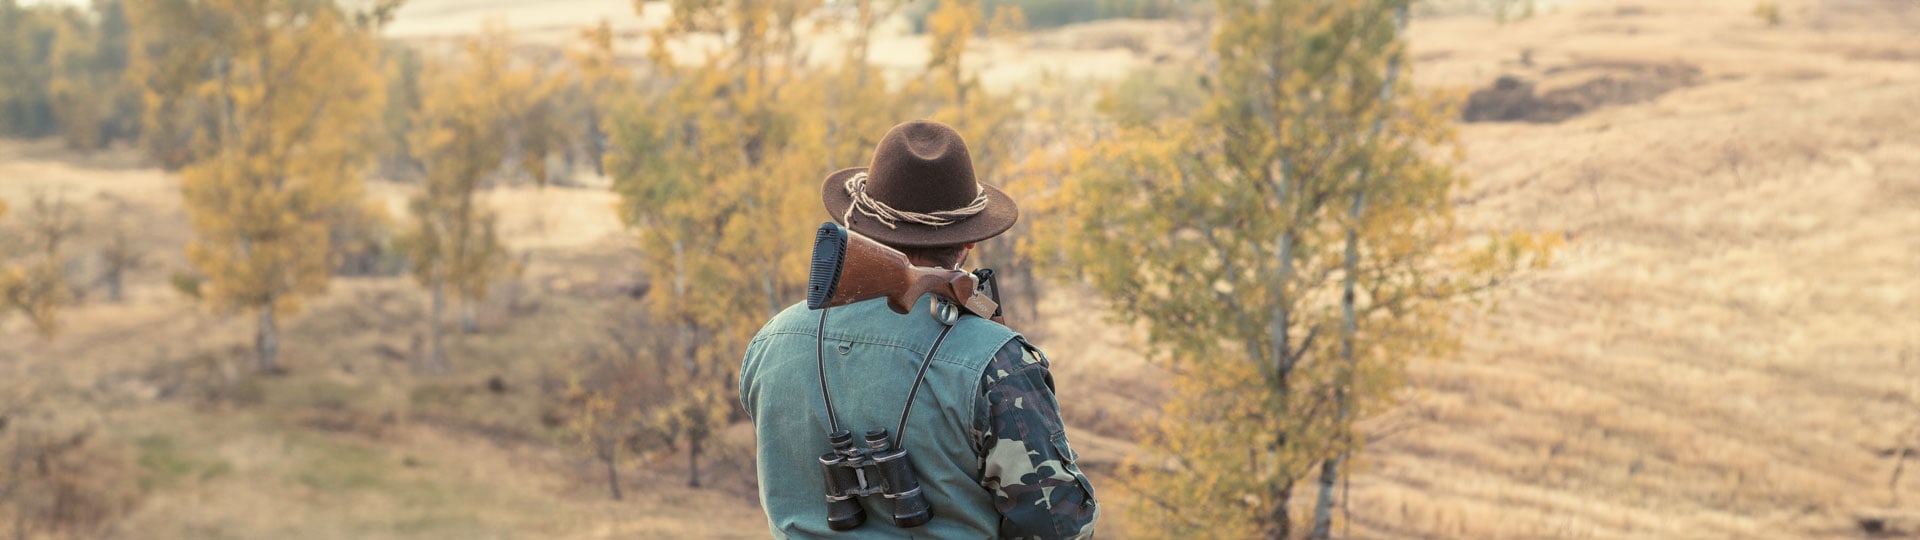 Klappmesser sind Werkzeuge für Jäger, Camper und Wanderer